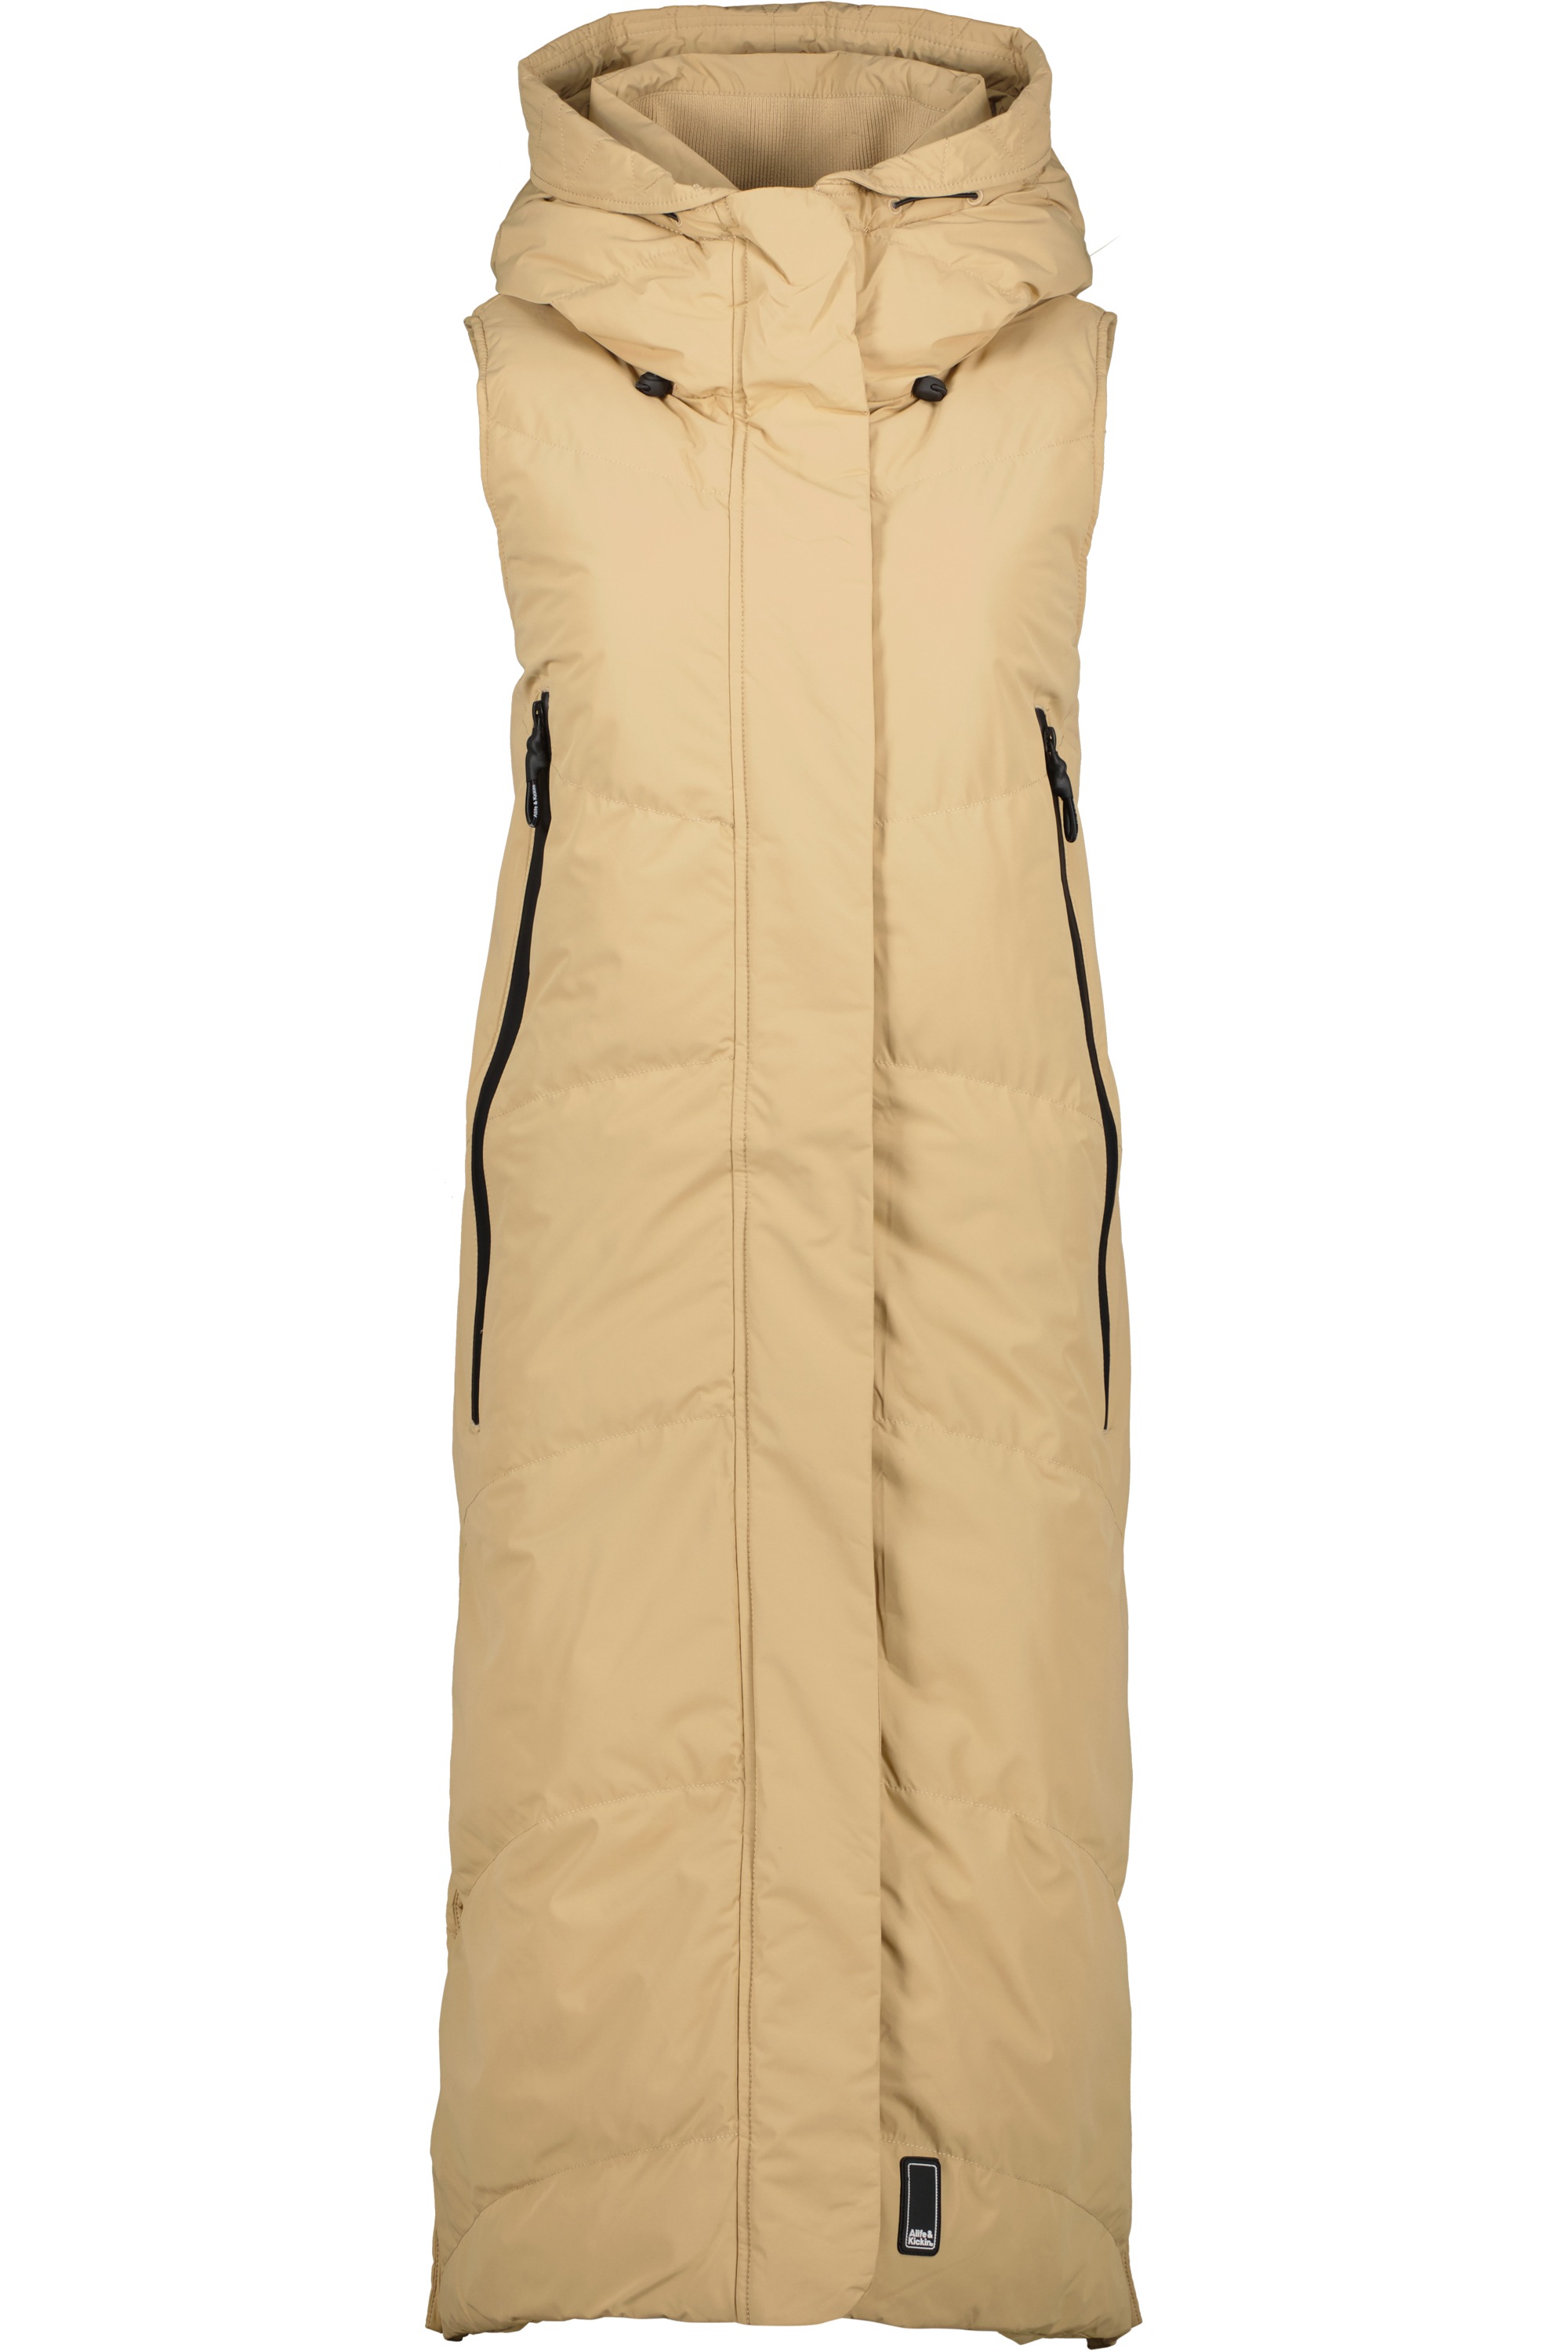 Alife »JuneAK A Vest & Damen BAUR für | Steppweste Kickin Steppweste« bestellen